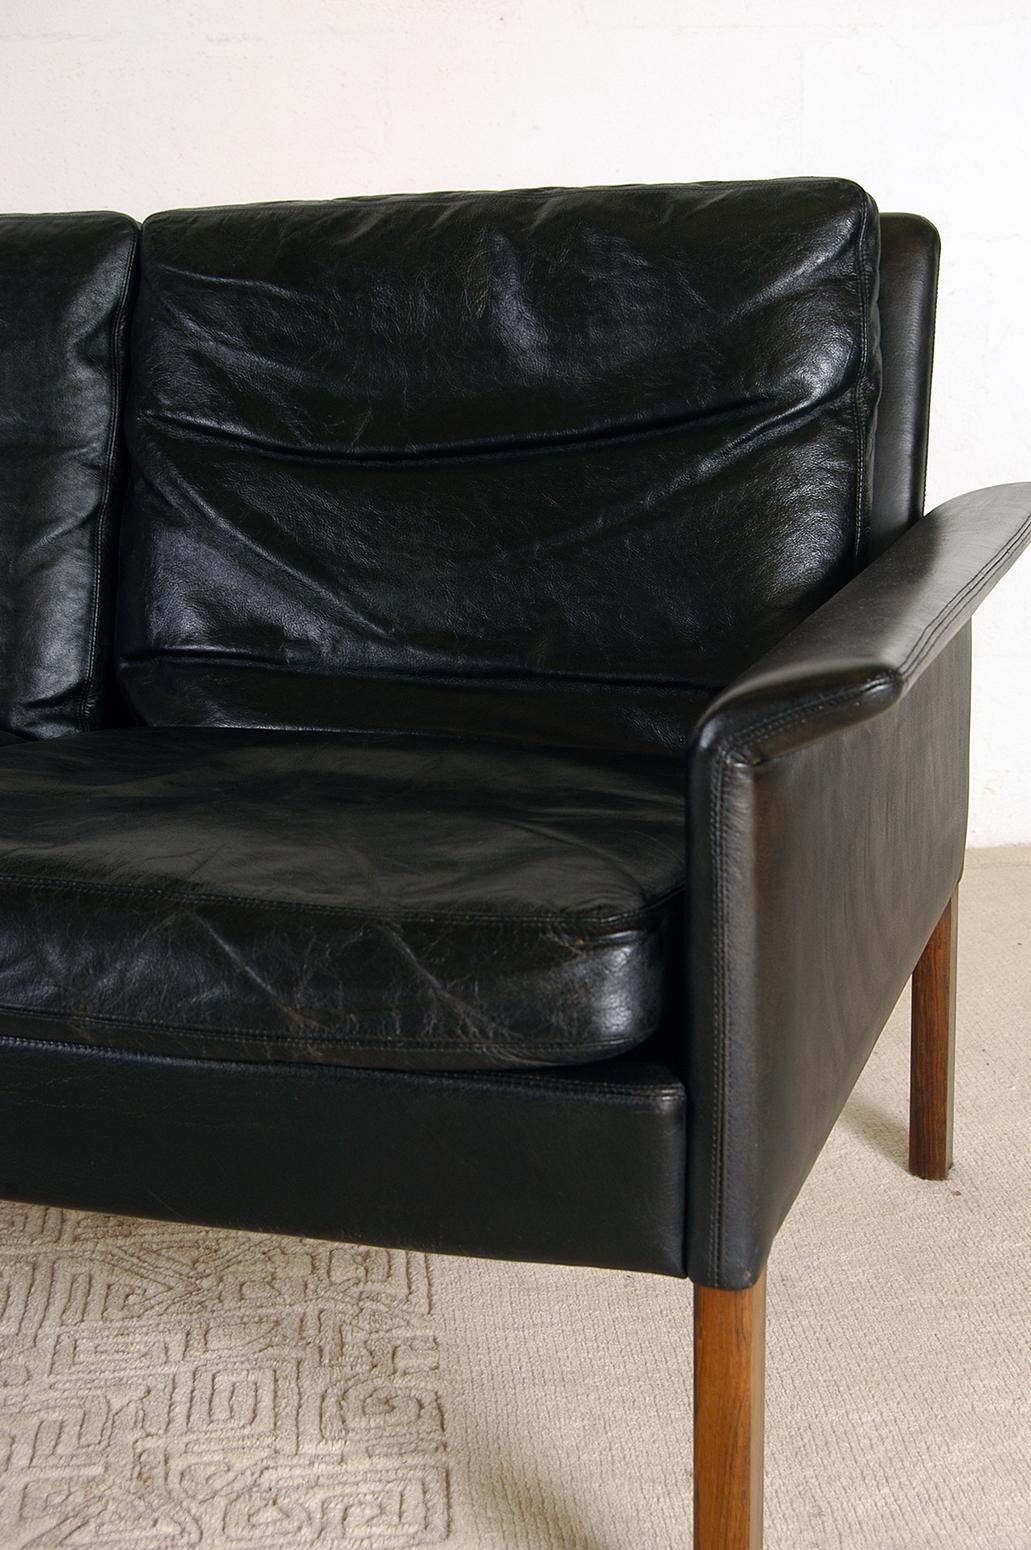 1960s Danish Midcentury Leather Sofa by Hans Olsen for Christian Sorensen 2